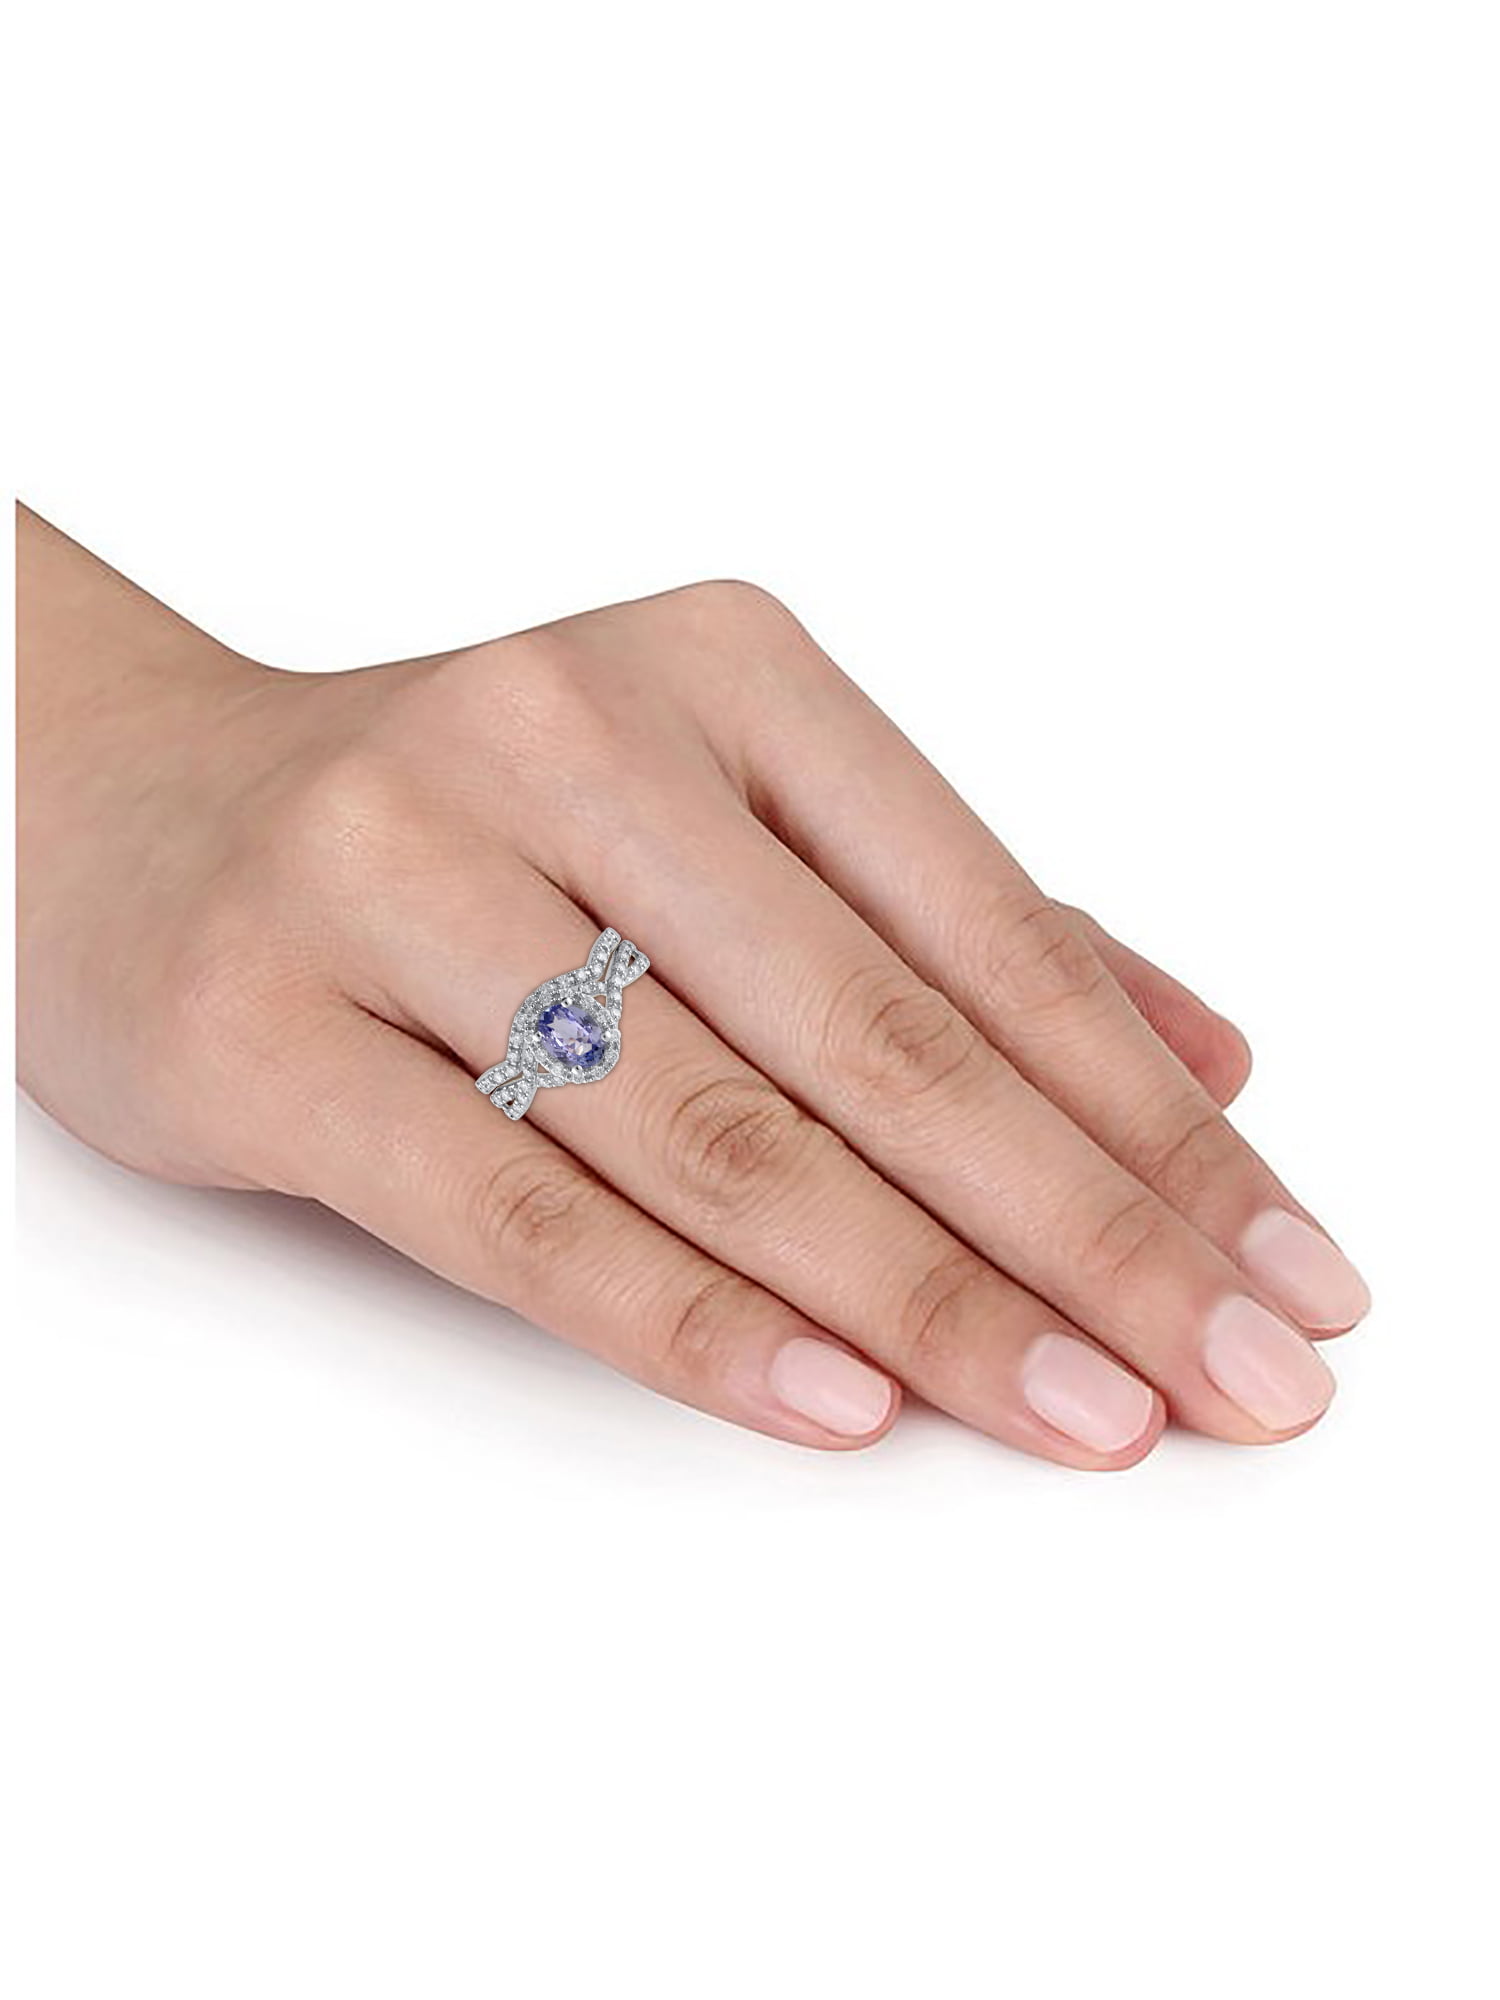 毎週更新 ルヴァン レディース リング アクセサリー Blueberry Tanzanite 1-1 ct. Diamond  Braided Halo Ring in 14k Rose Gold